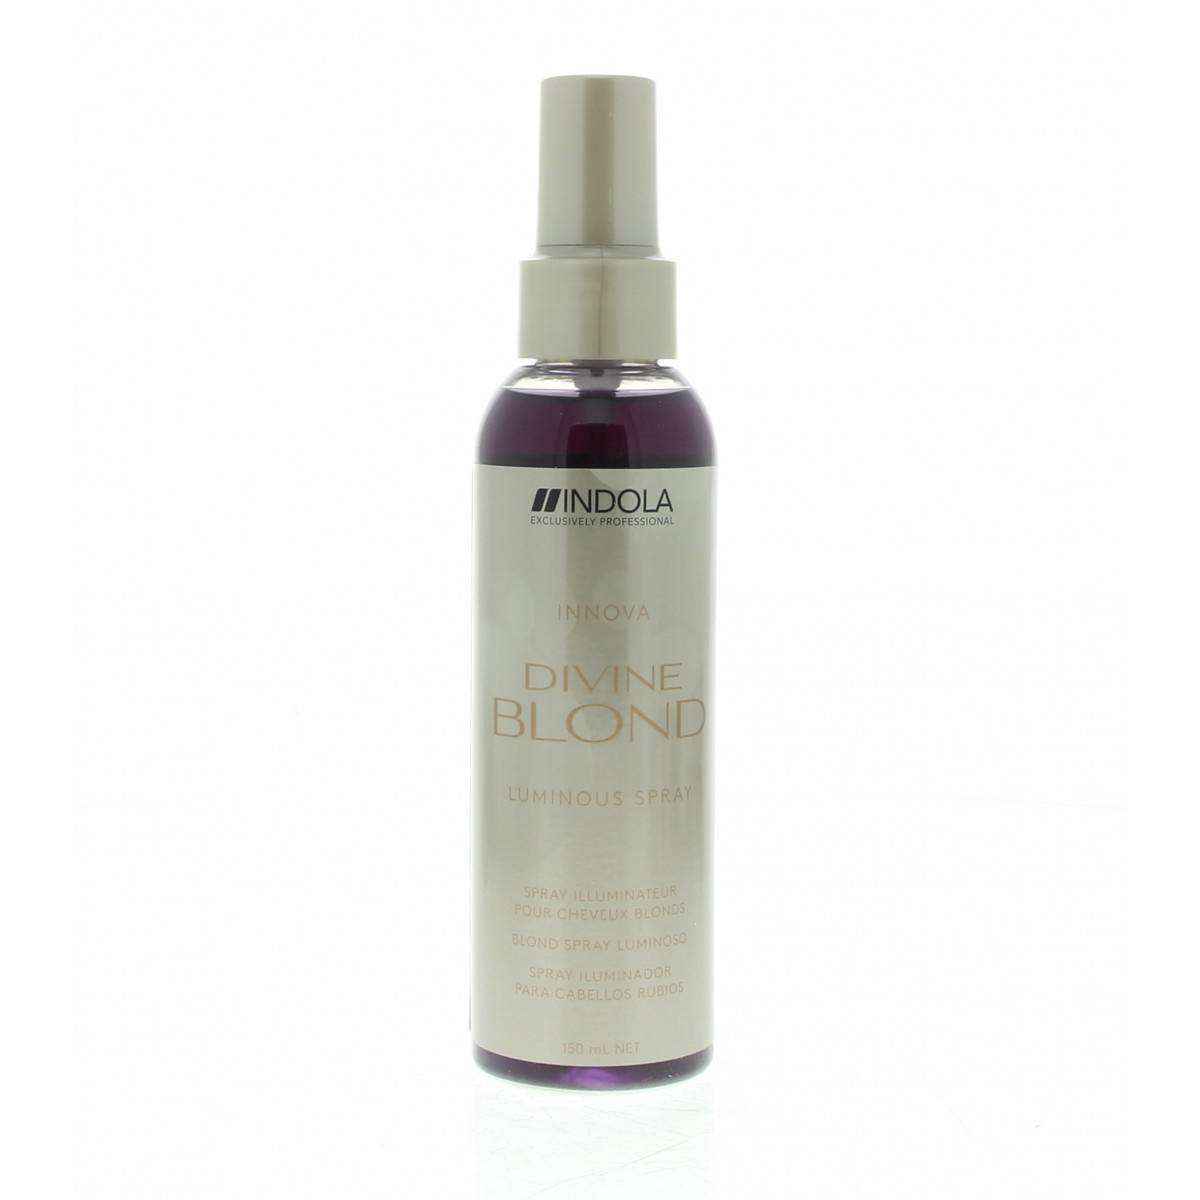 Спрей для светлых волос. Indola Glamorous Oil спрей-блеск для улучшения расчесывания волос цены.